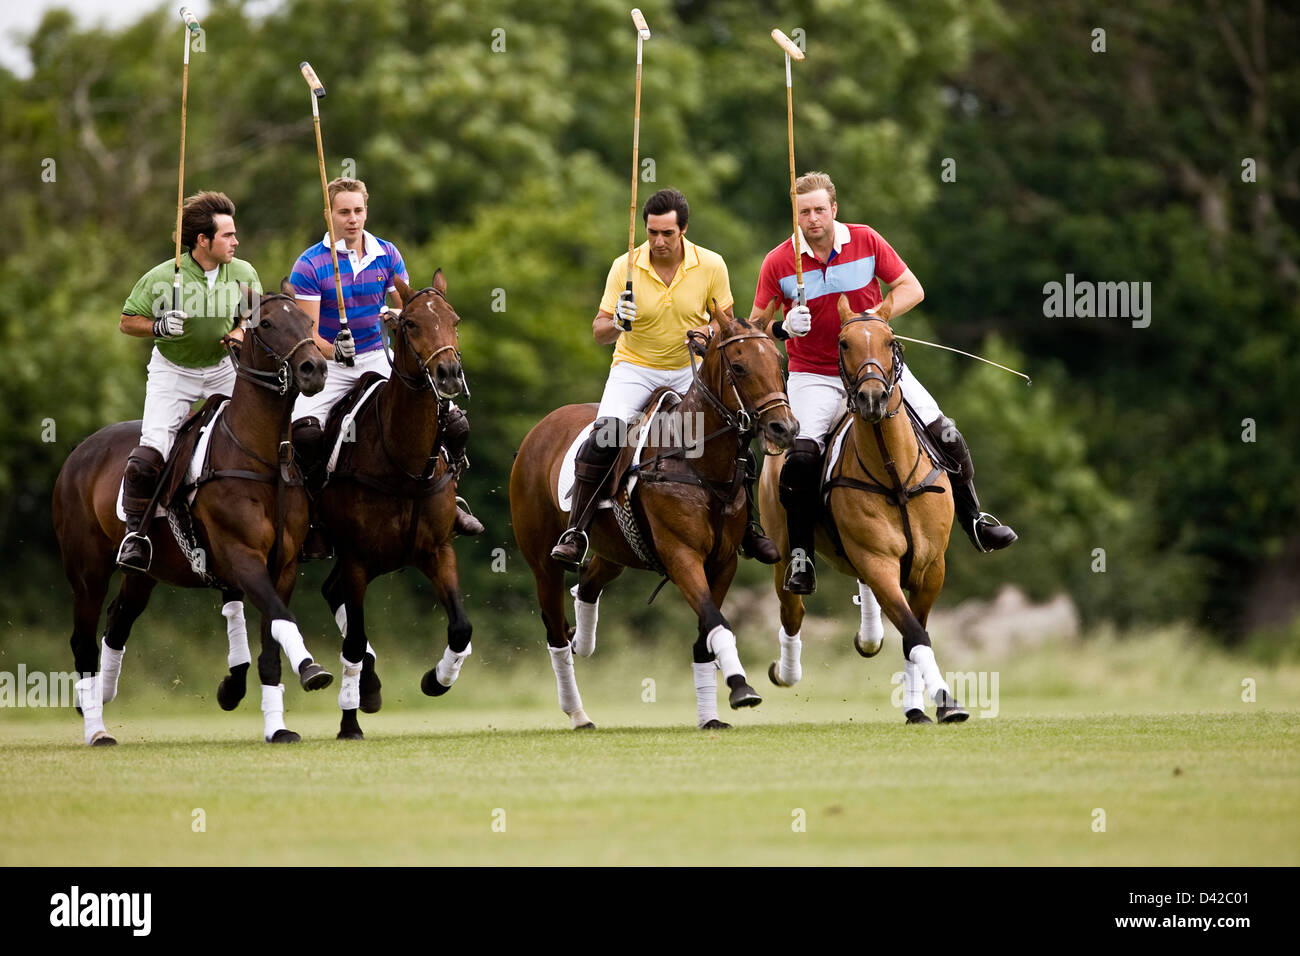 Los jugadores de polo a caballo, rivalidad Foto de stock